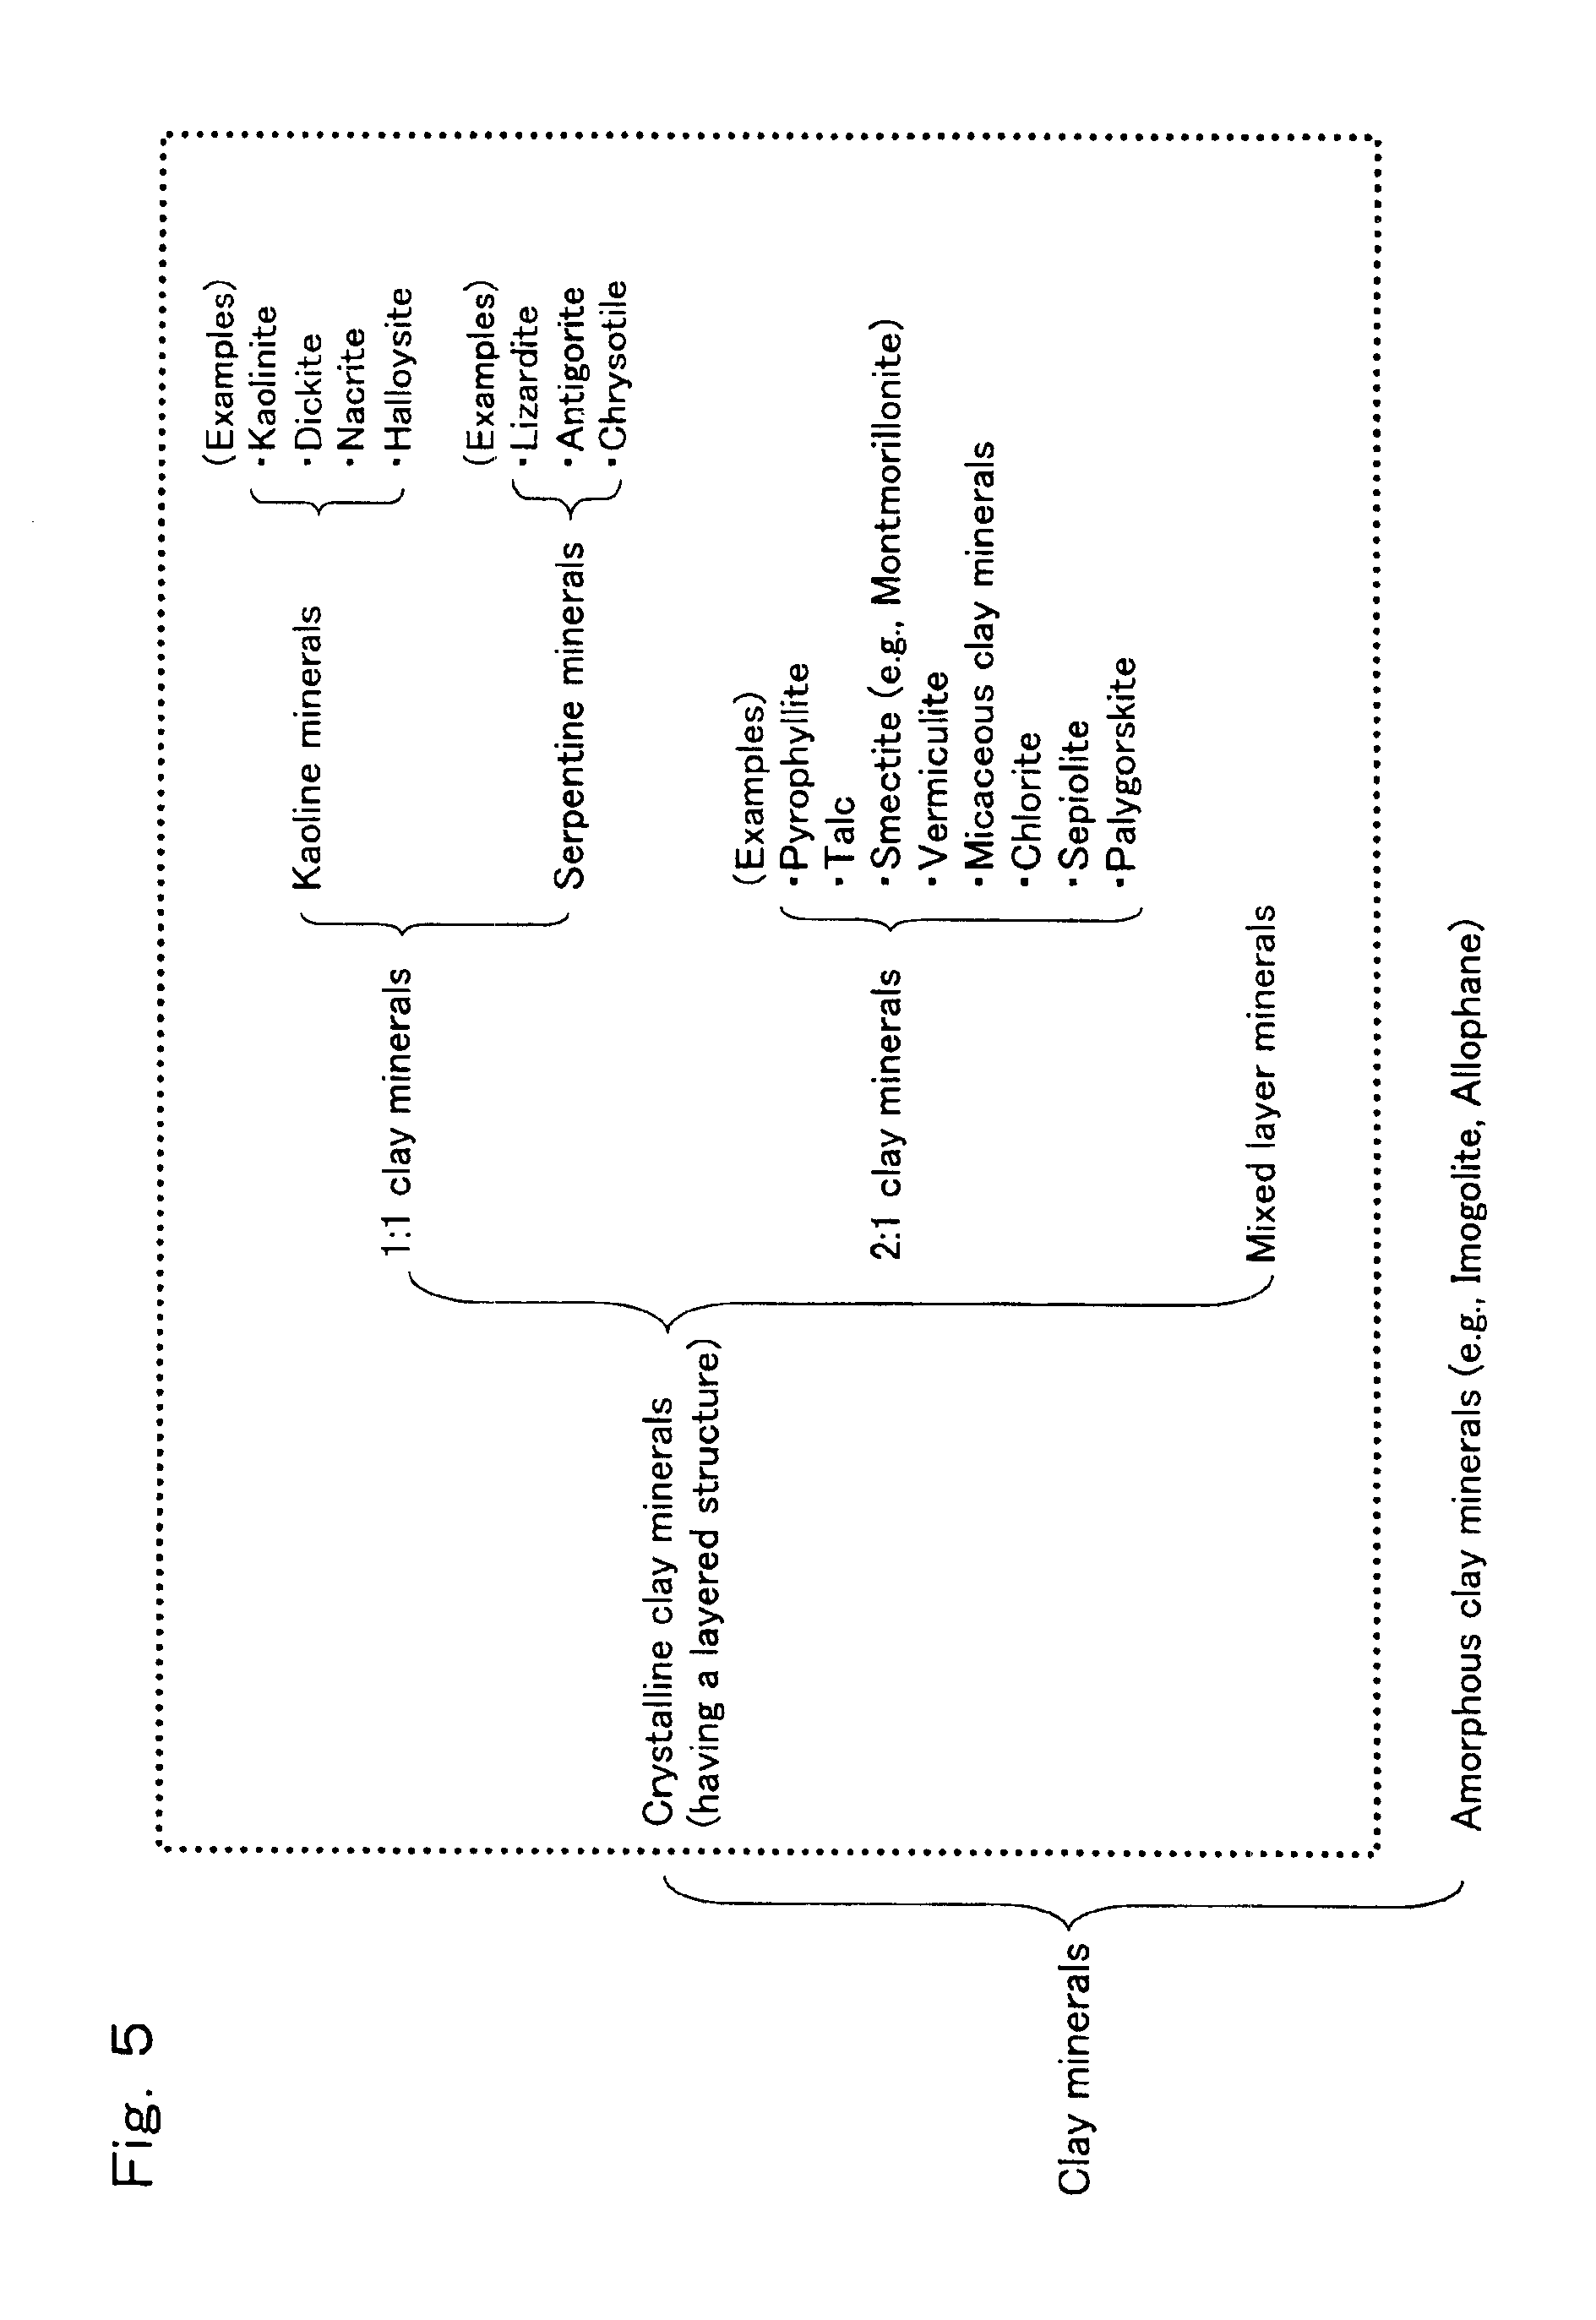 Process for preparation of epsilon-caprolactam